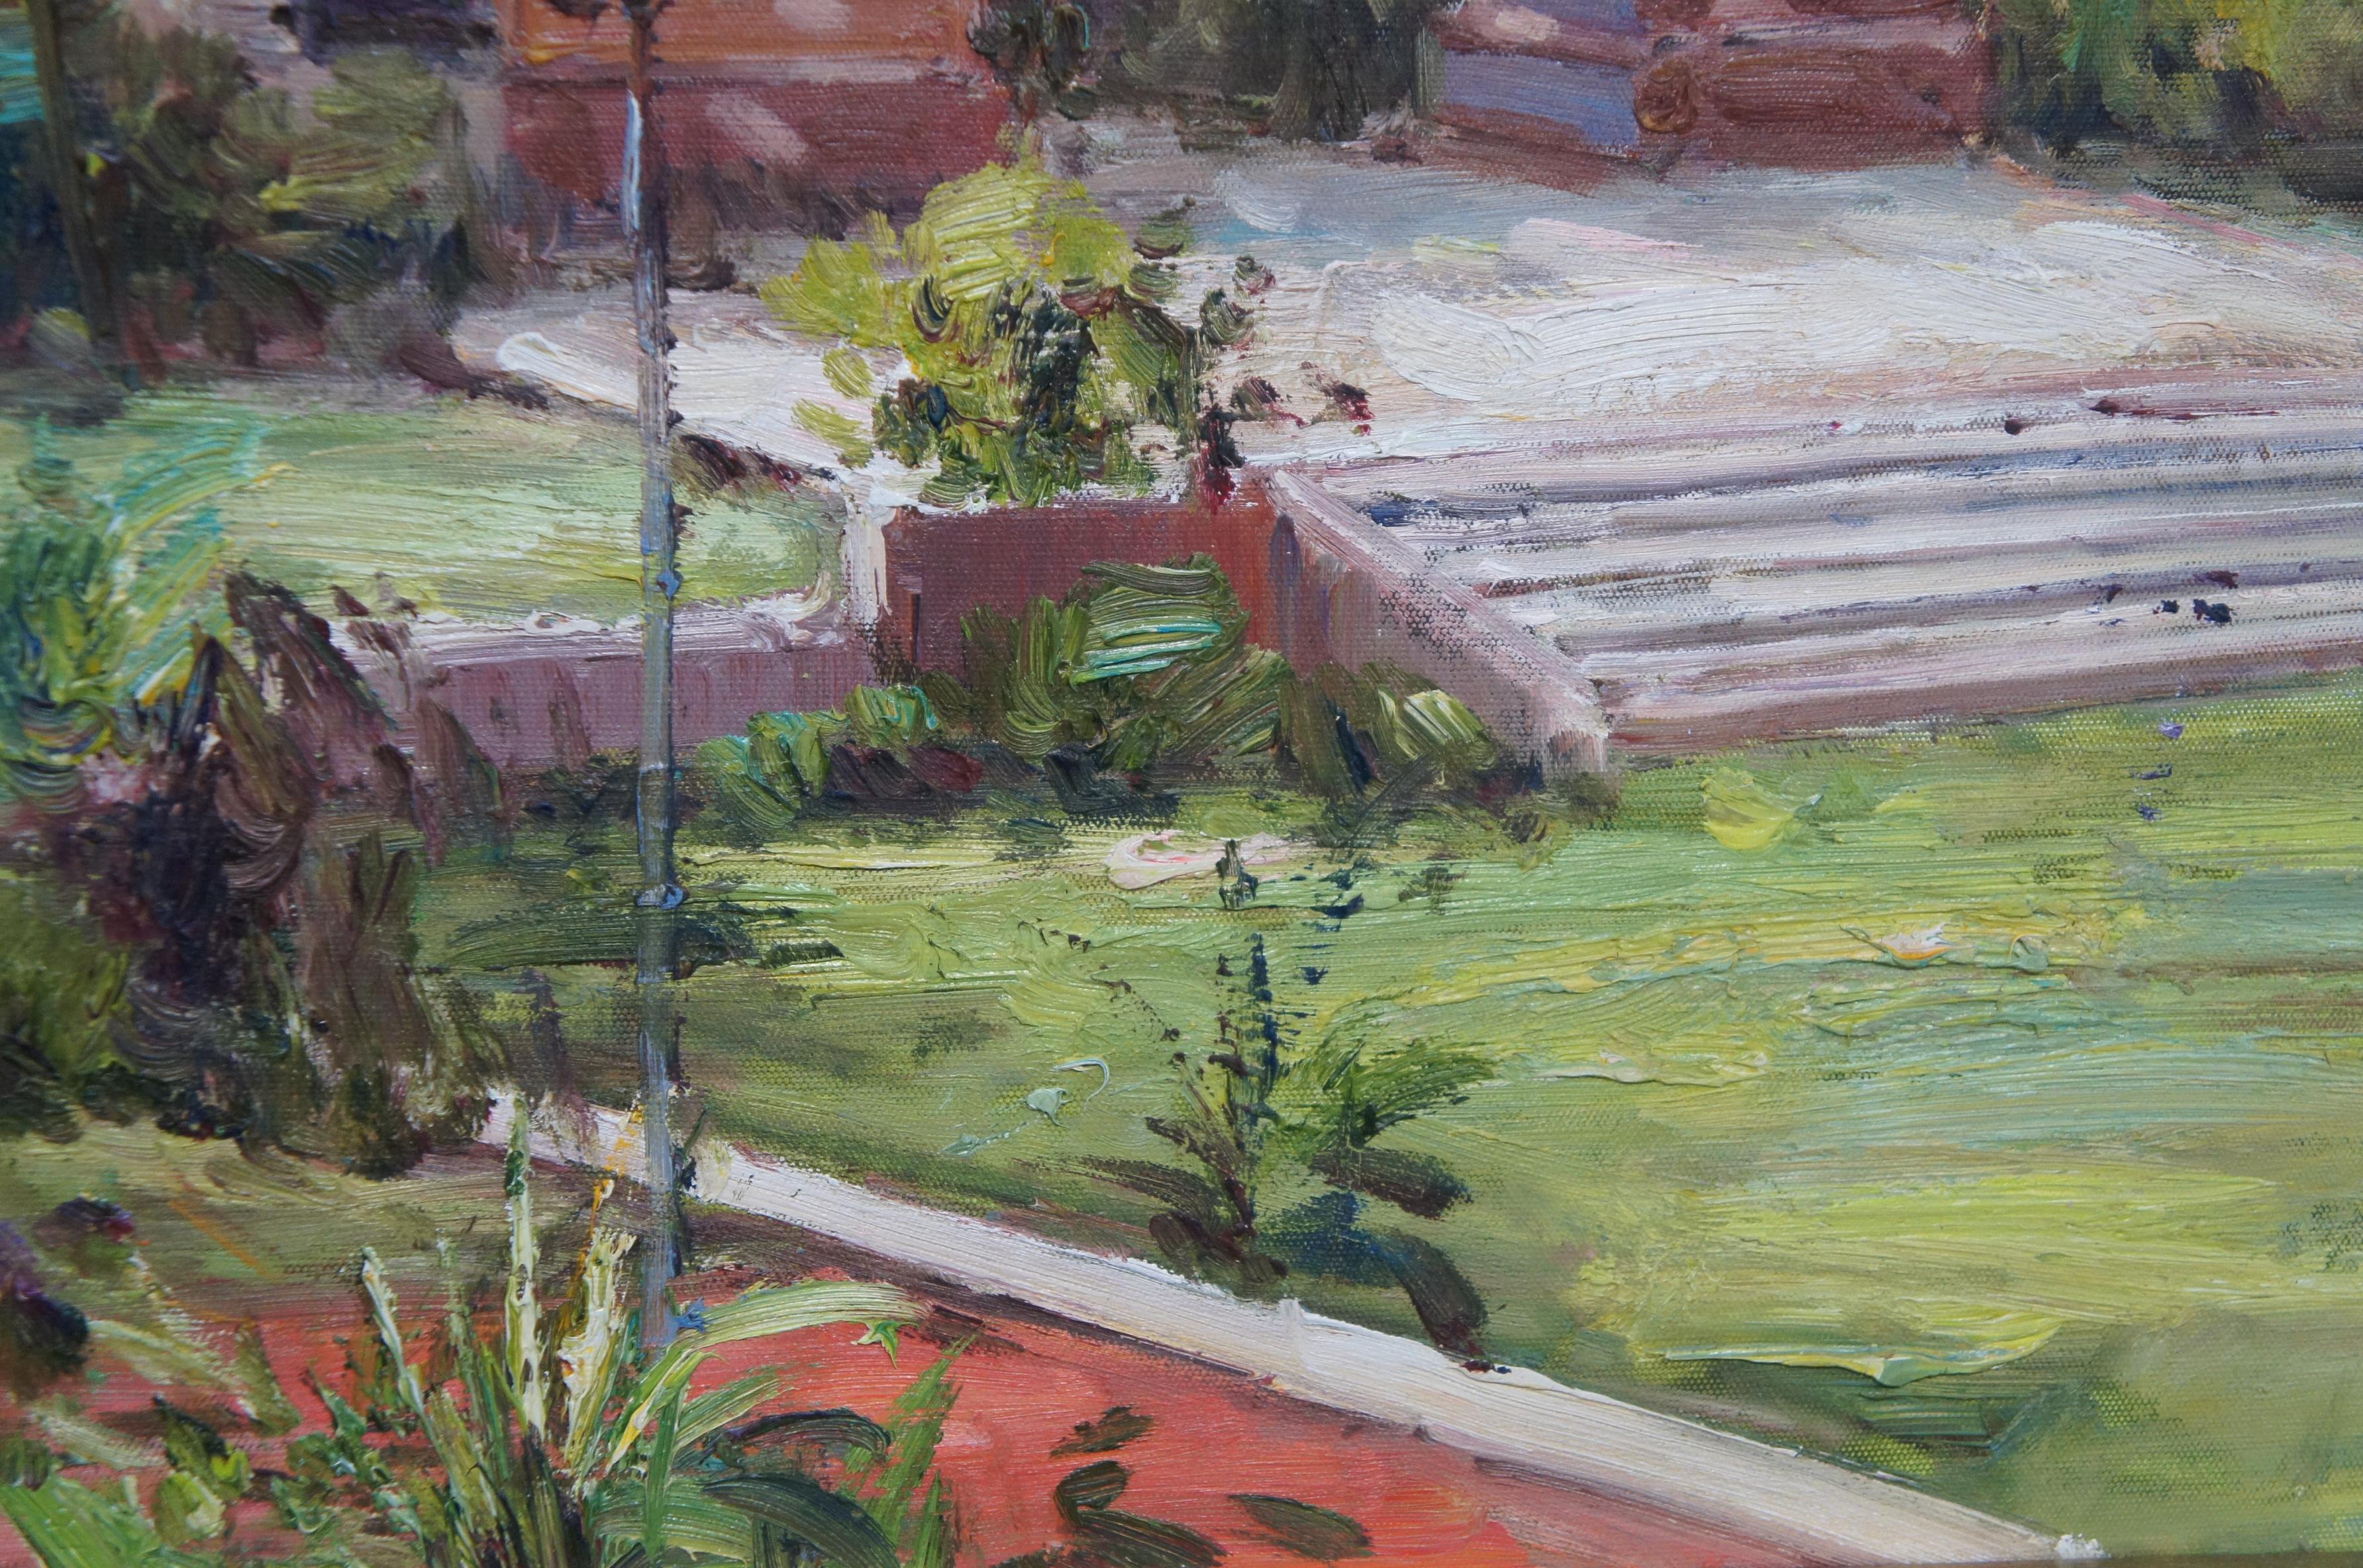 Vintage Santa Barbara Courthouse Sunken Garden Landscape Oil Painting Framed 48